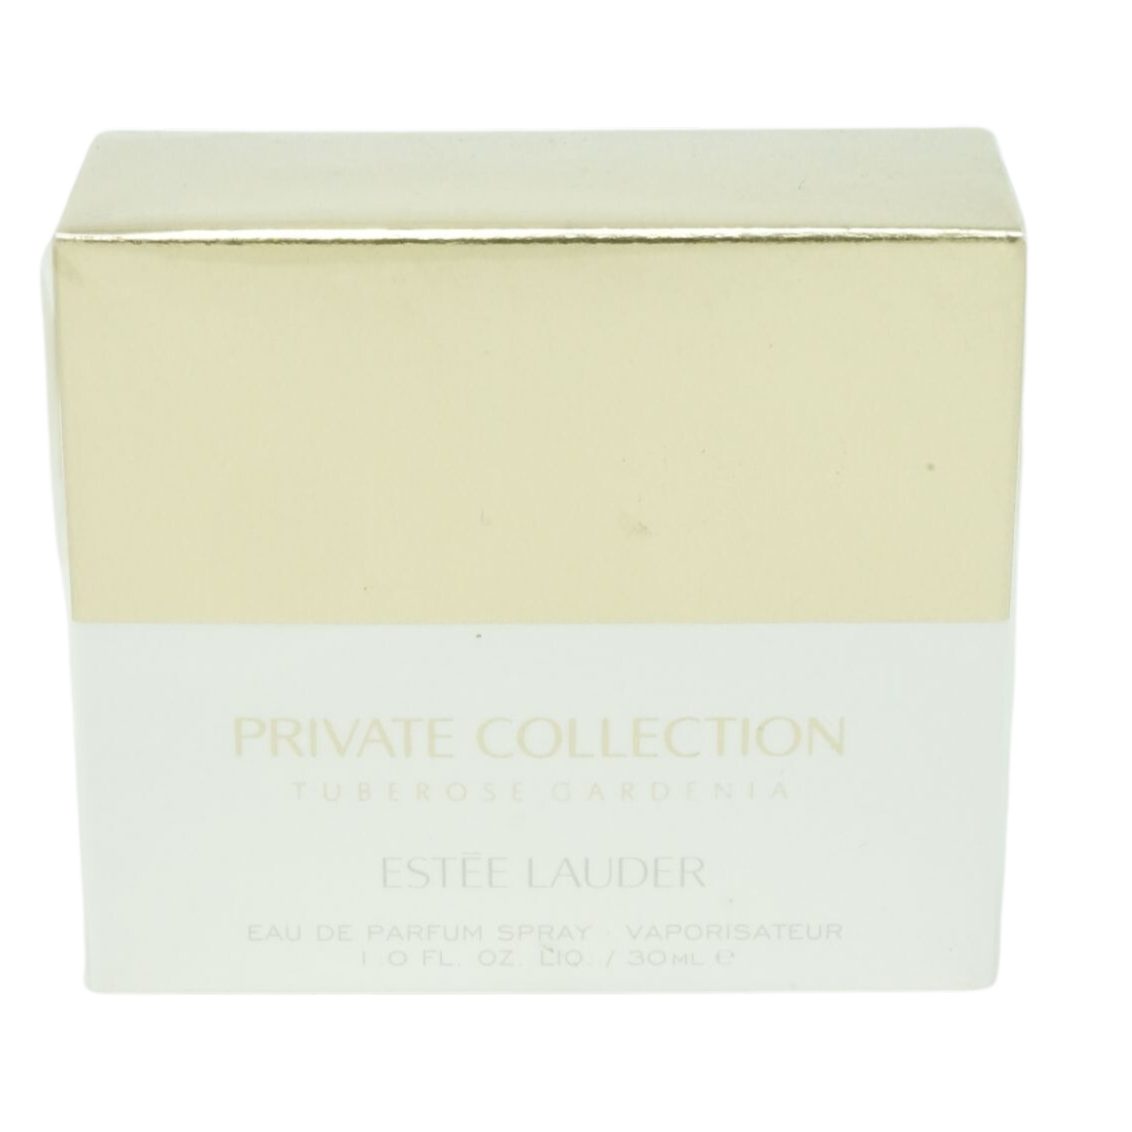 ESTÉE LAUDER Eau de Eau Lauder Toilette 30ml Estee Private Collection Parfum de Gardenia Tuberose